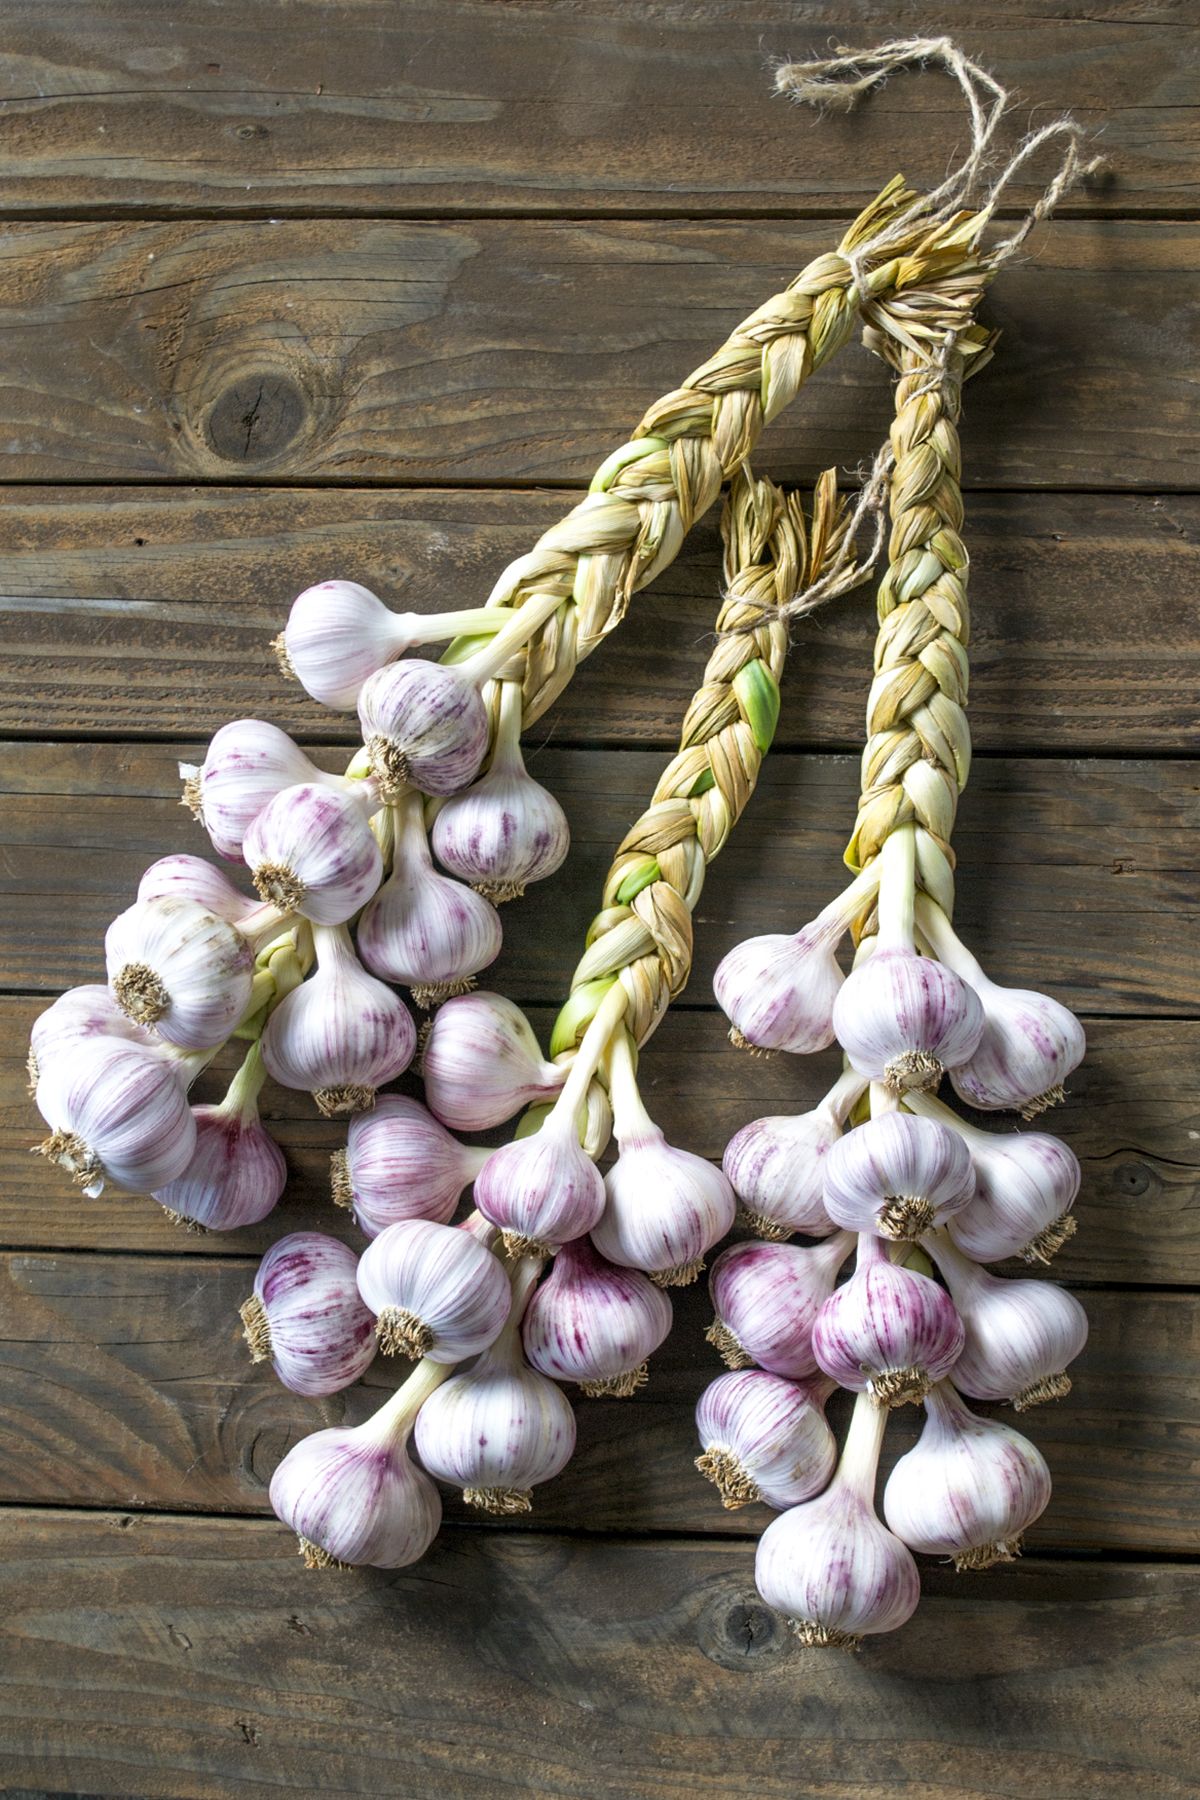 GARLIC 'Nootka Rose' --Allium sativum--